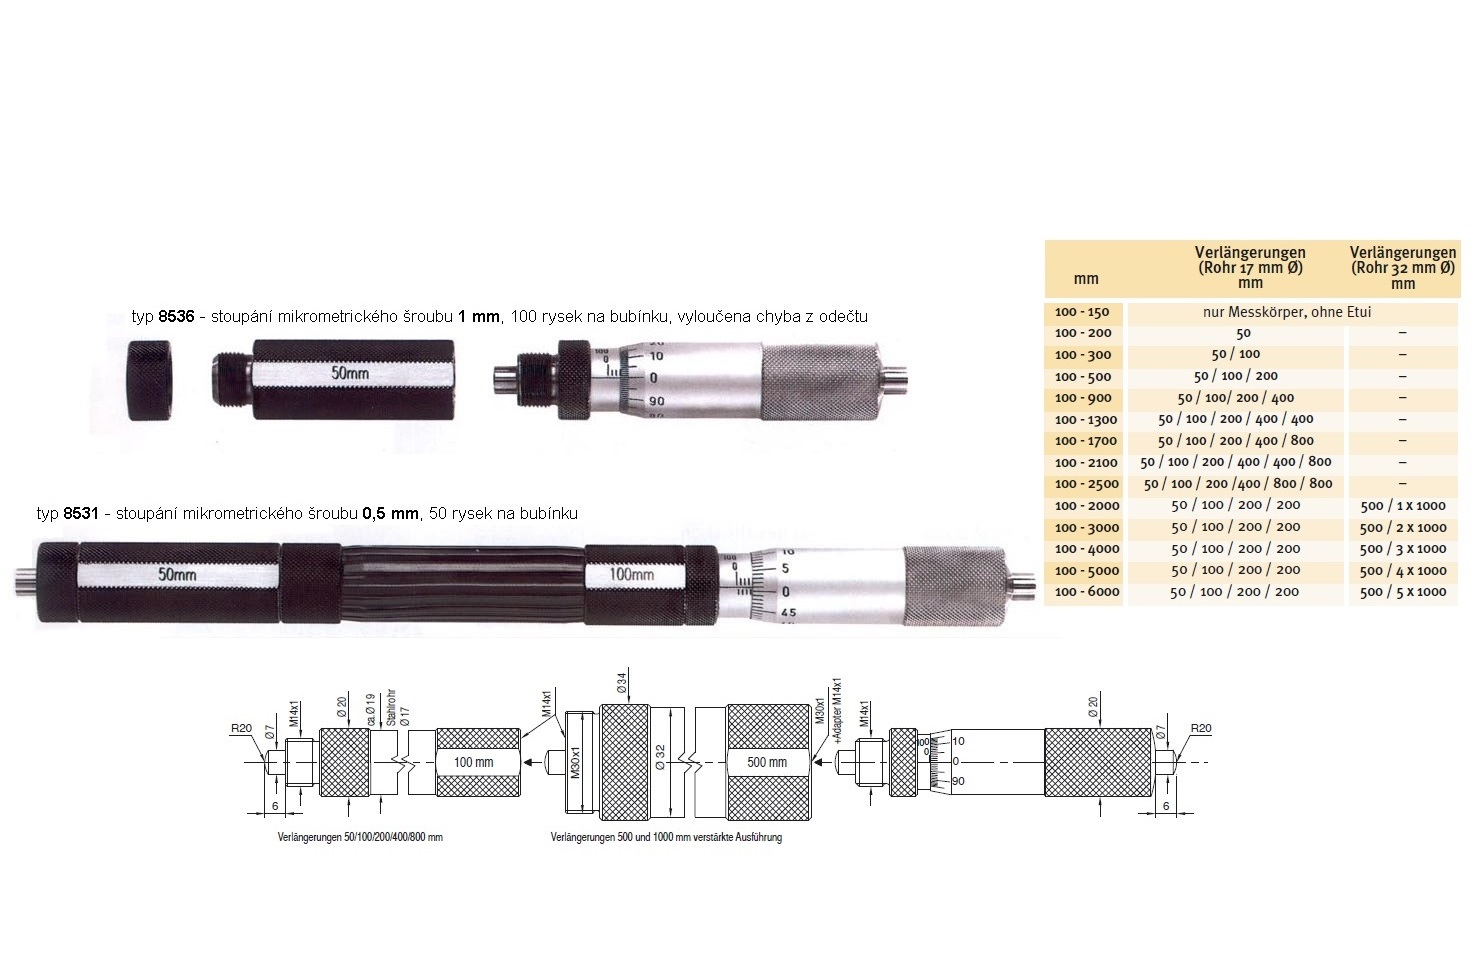 Mikrometrický odpich - hlavice HARTIG 100-150 mm, stoupání šroubu 1 mm, doteky tvrdokov